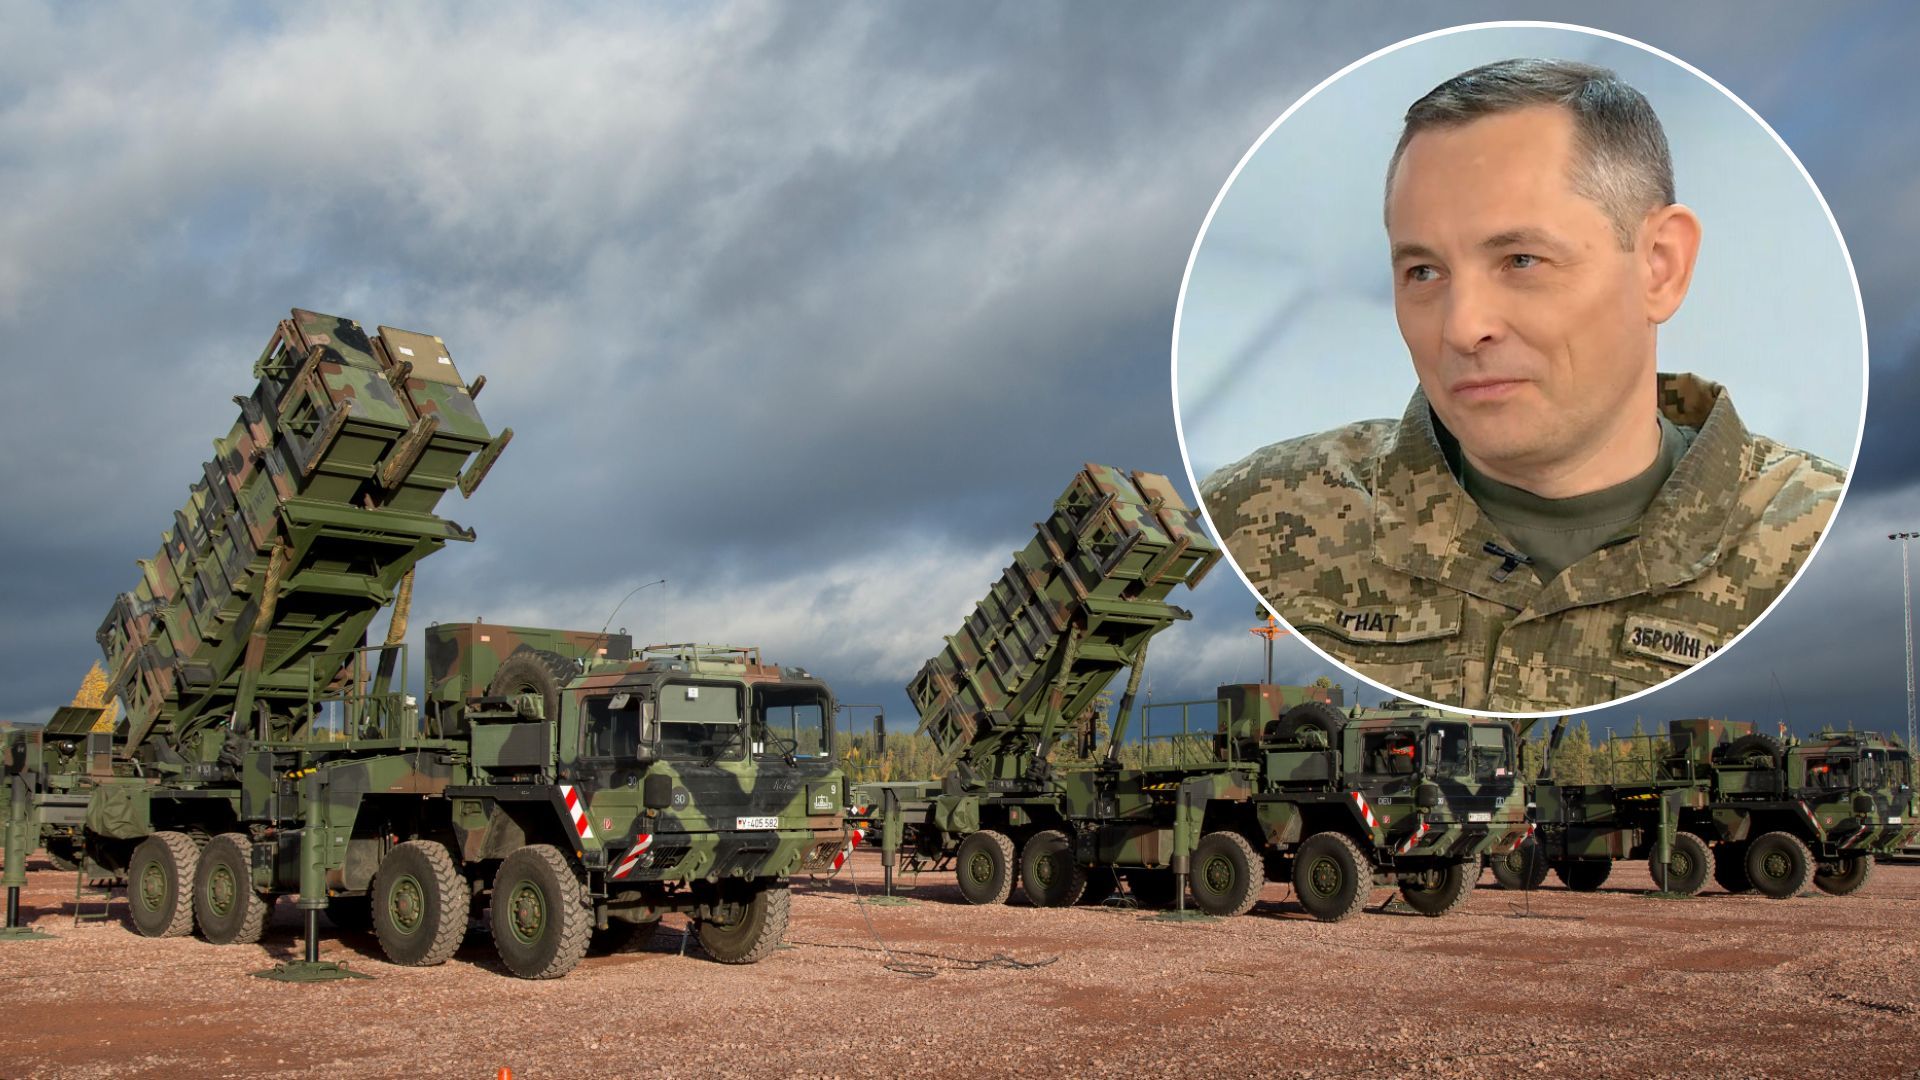 Patriot Украине - используют ли это оружие украинские военные - 24 Канал